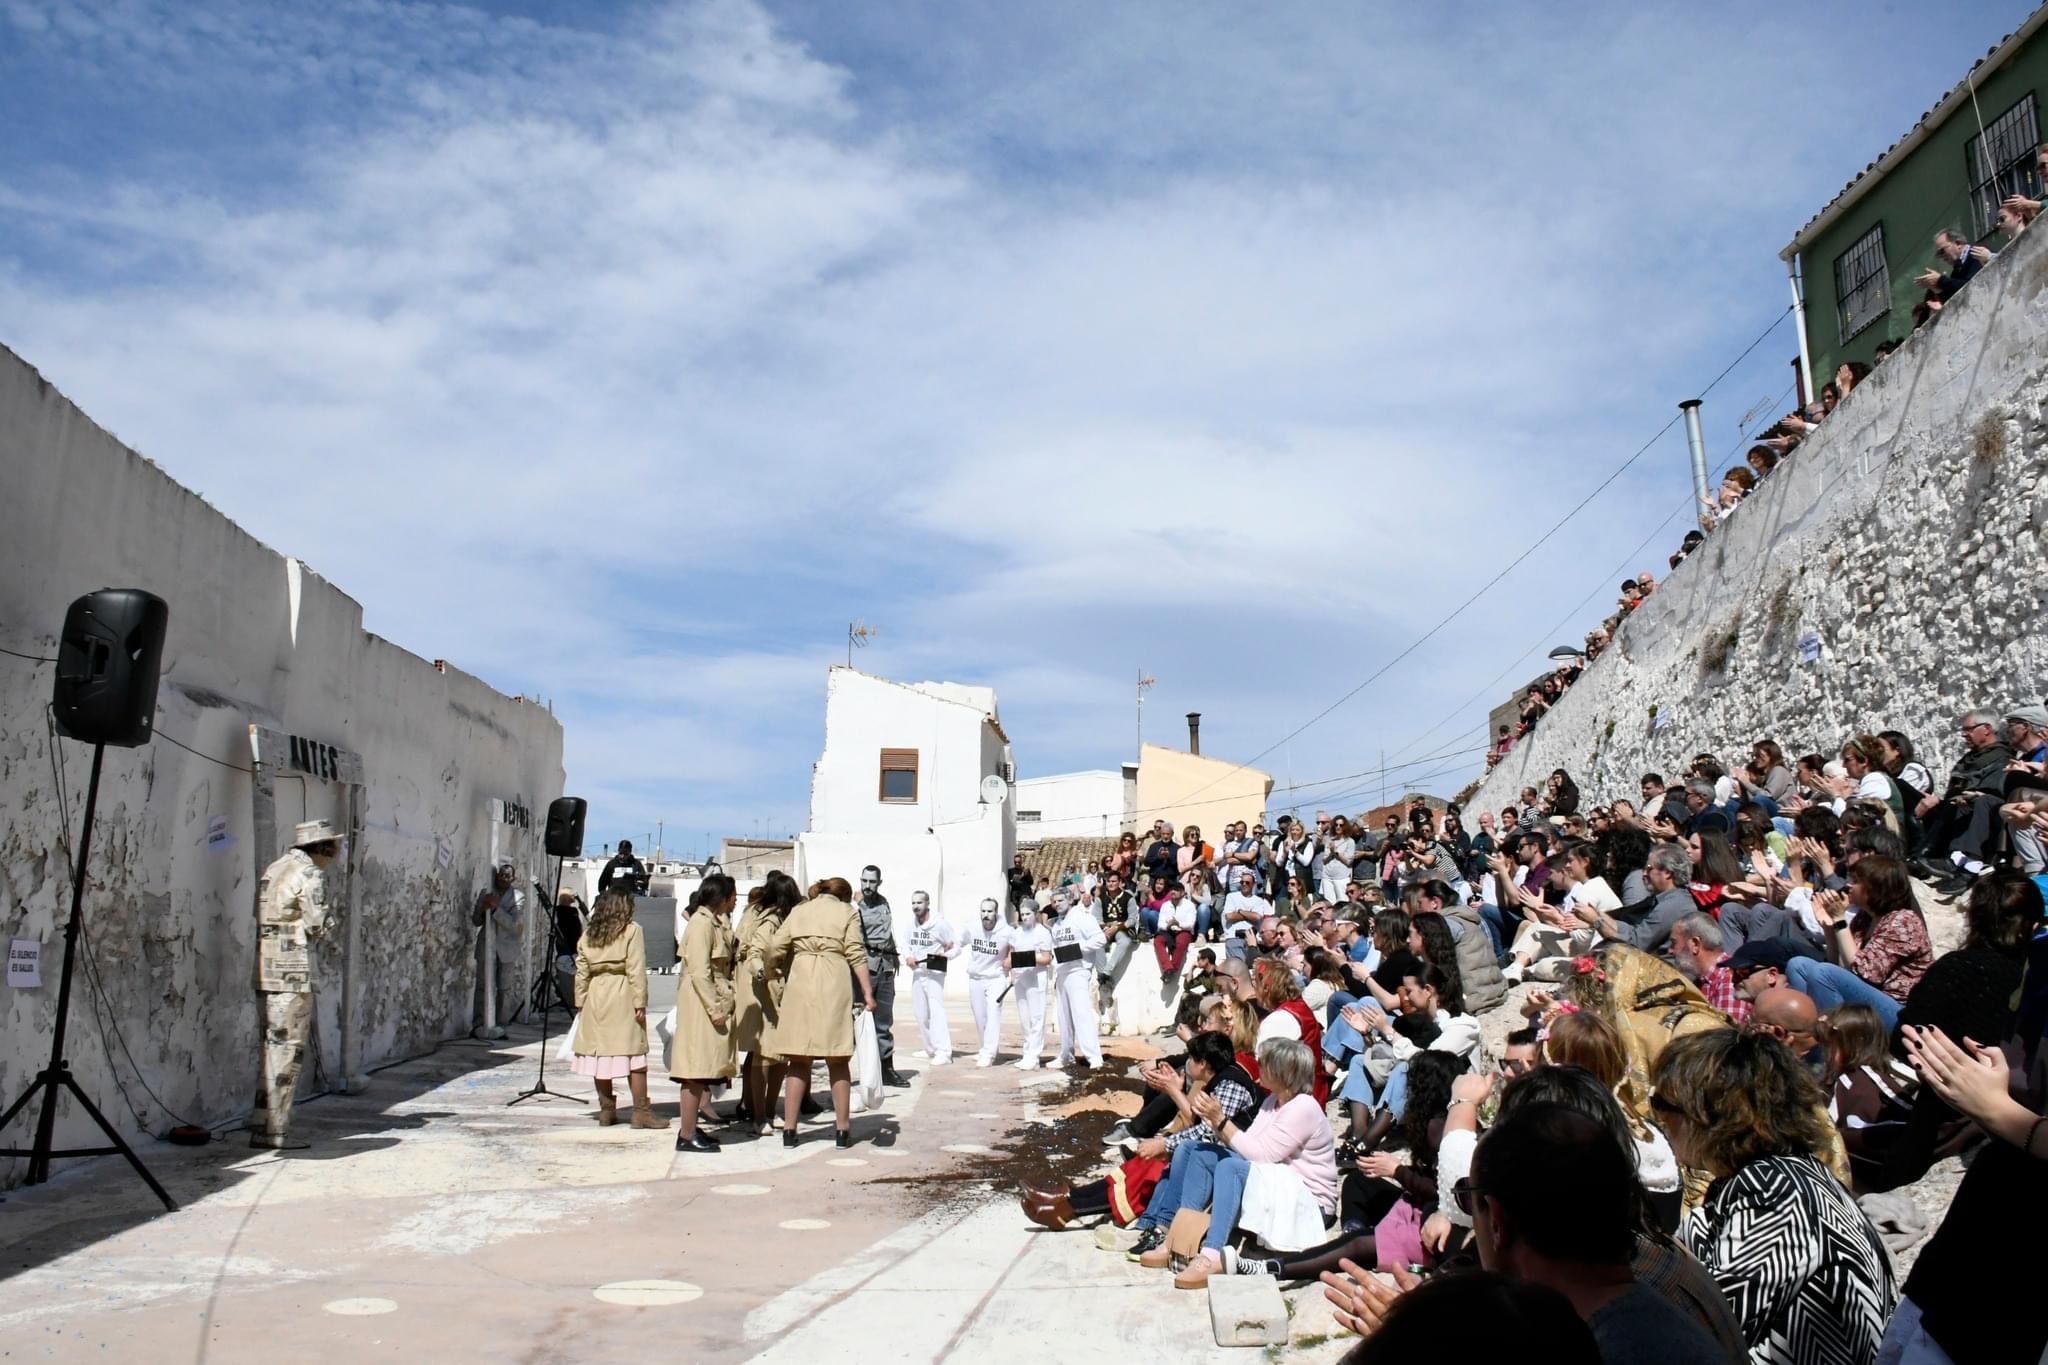 El PP propone crear un espacio cultural en la calle La Leña con el nombre de “Eleuterio Gandía”